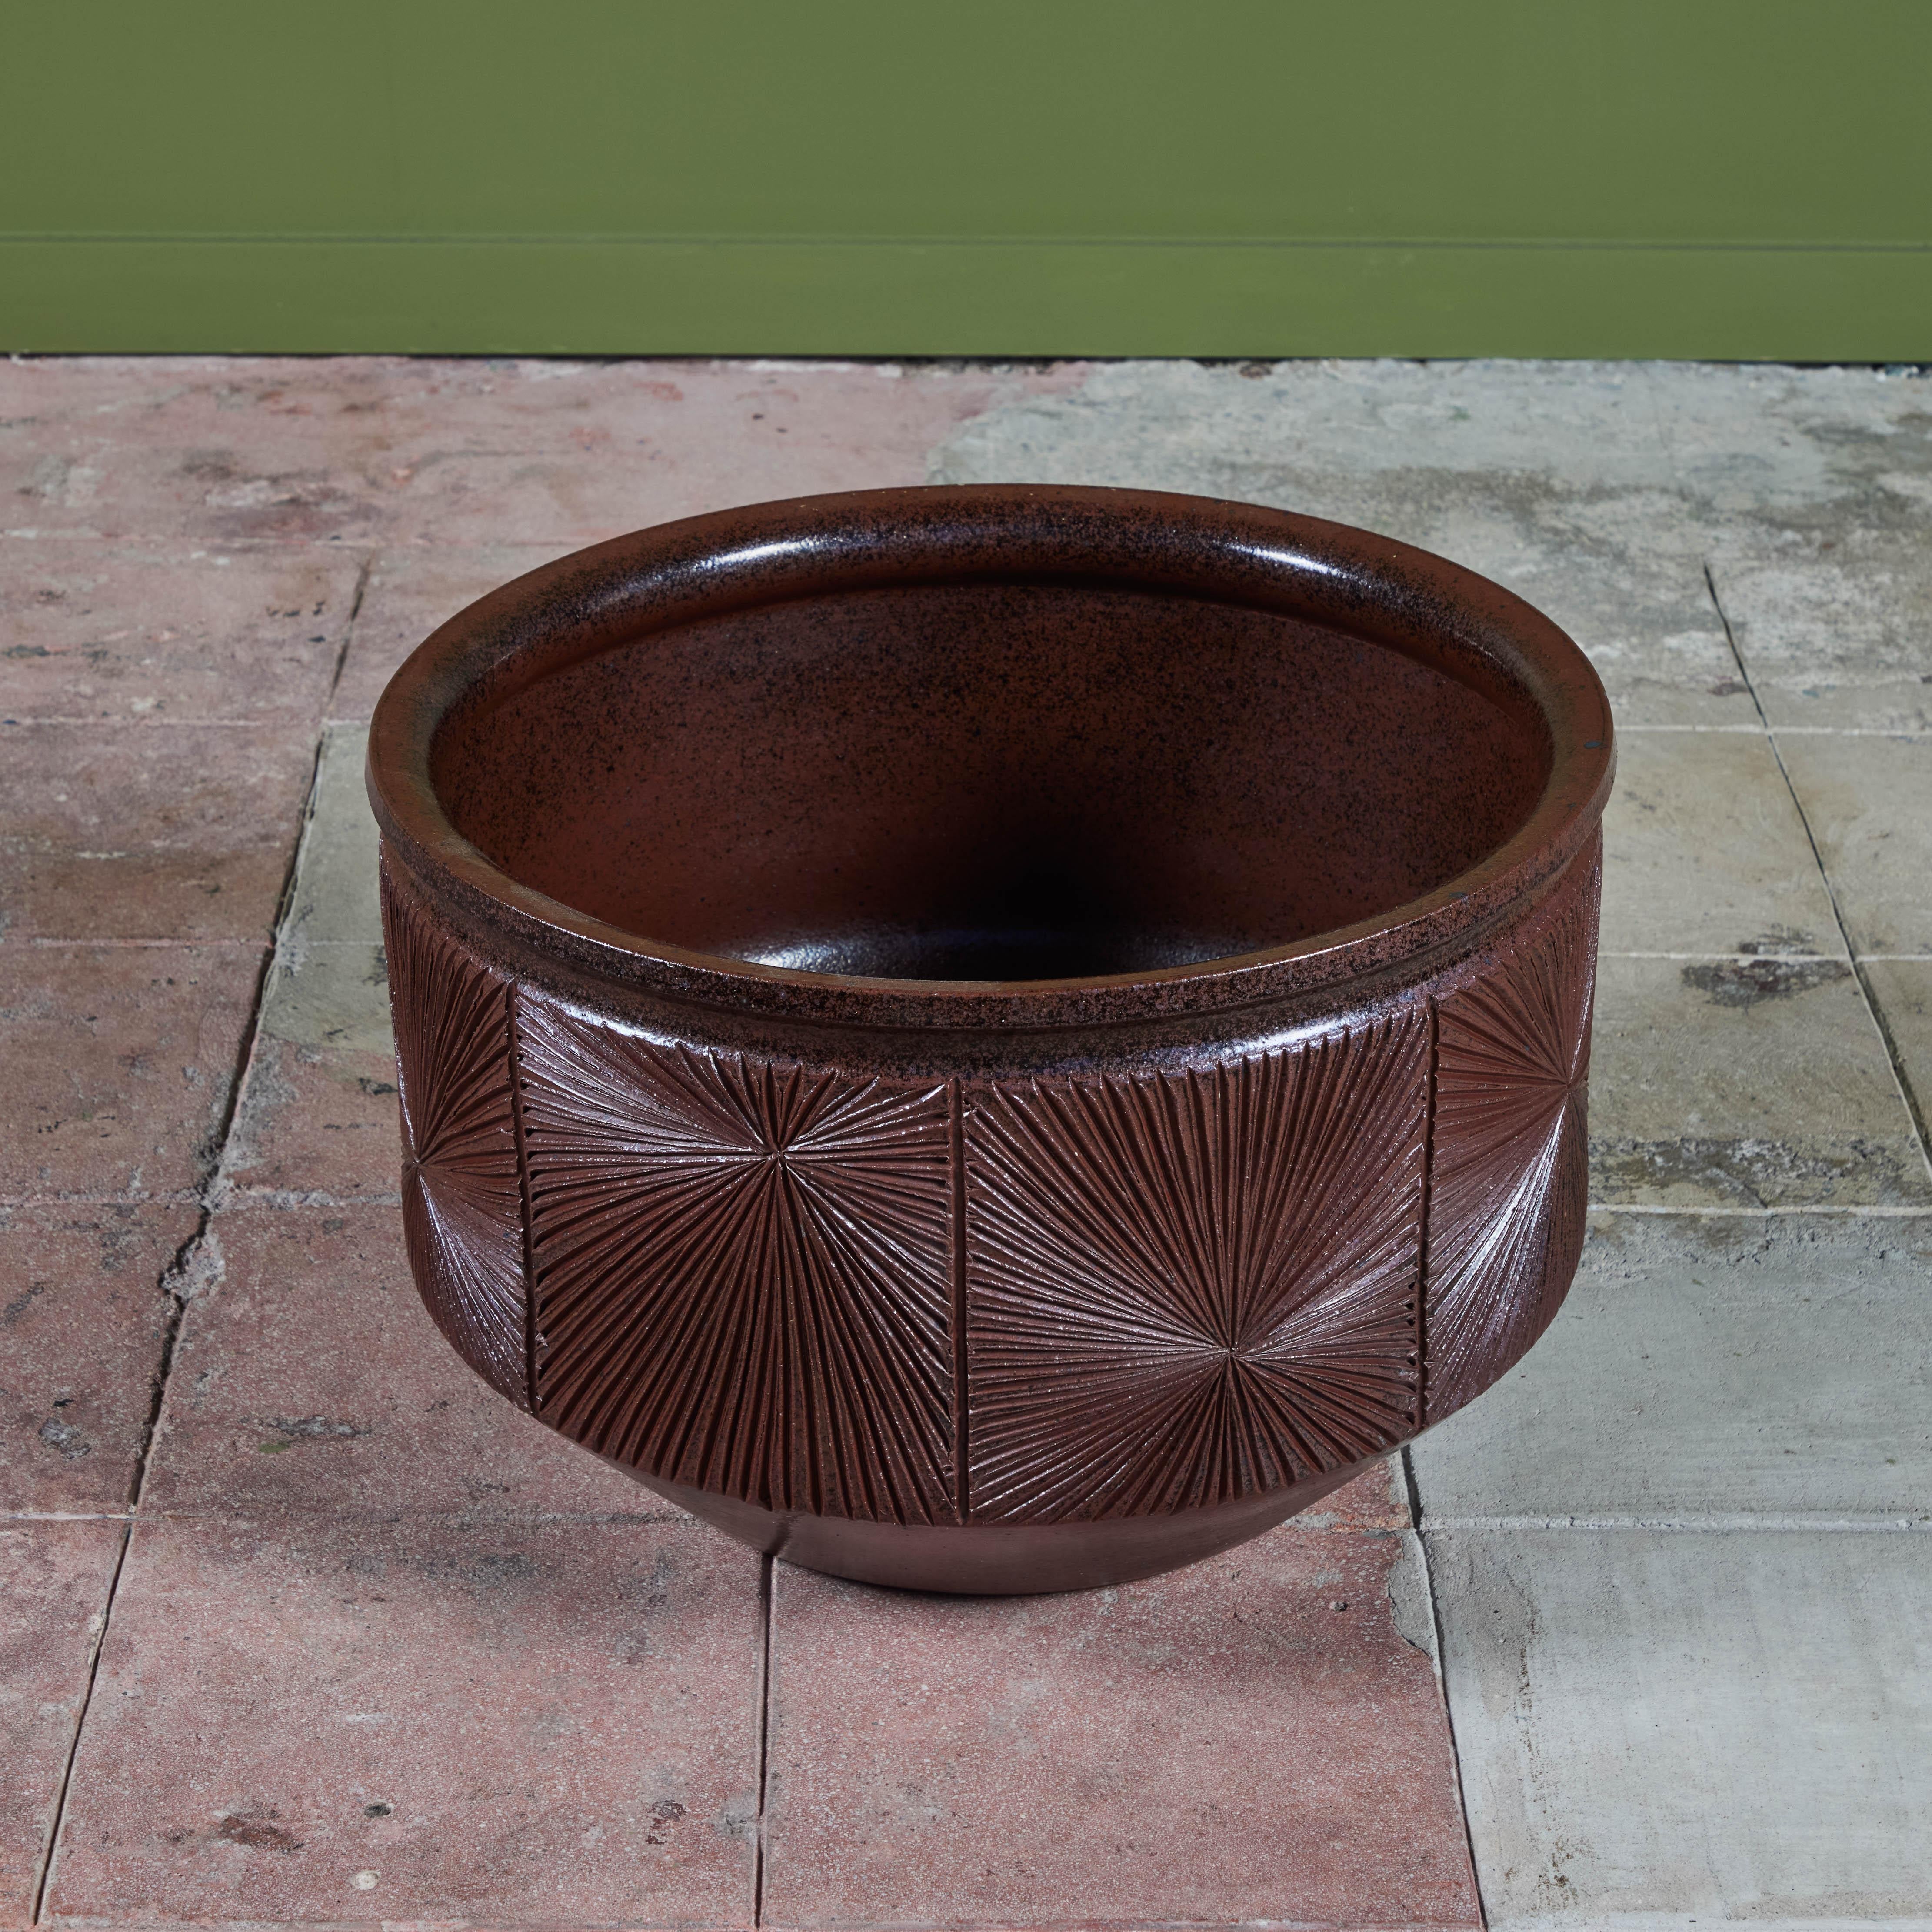 Pottery David Cressey & Robert Maxwell “Sunburst” Plum Glazed Planter for Earthgender For Sale